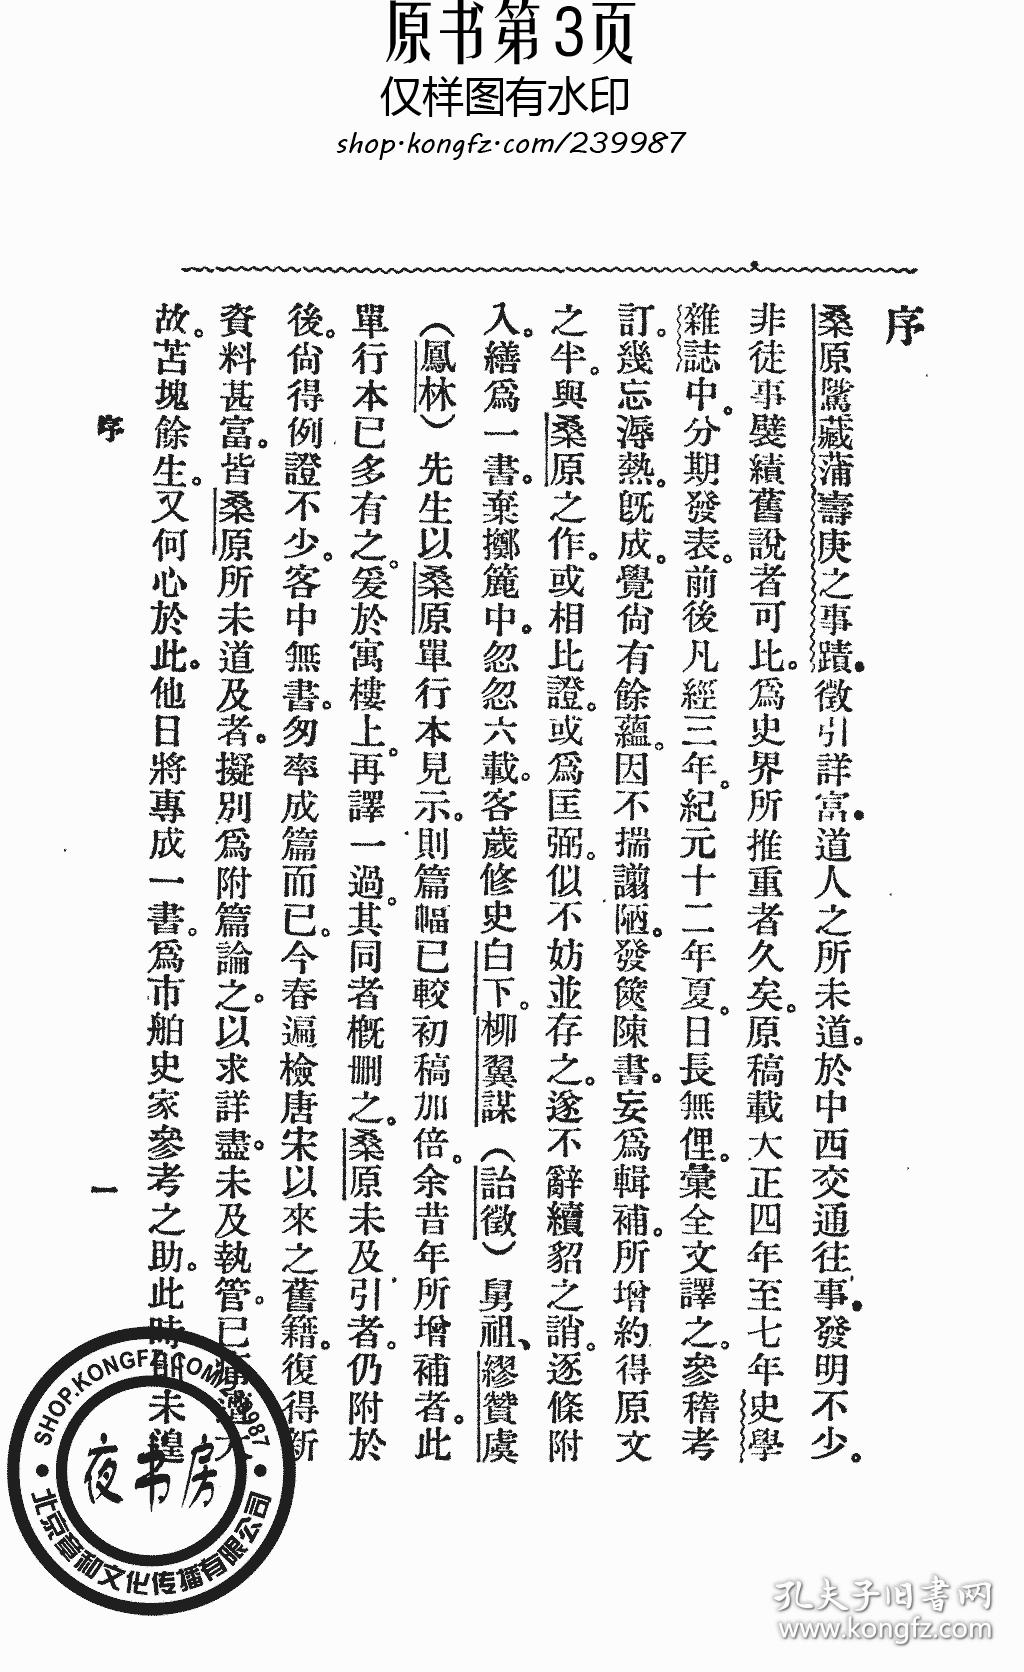 蒲寿庚考-1954年版-(复印本)-南京中国史学会丛书